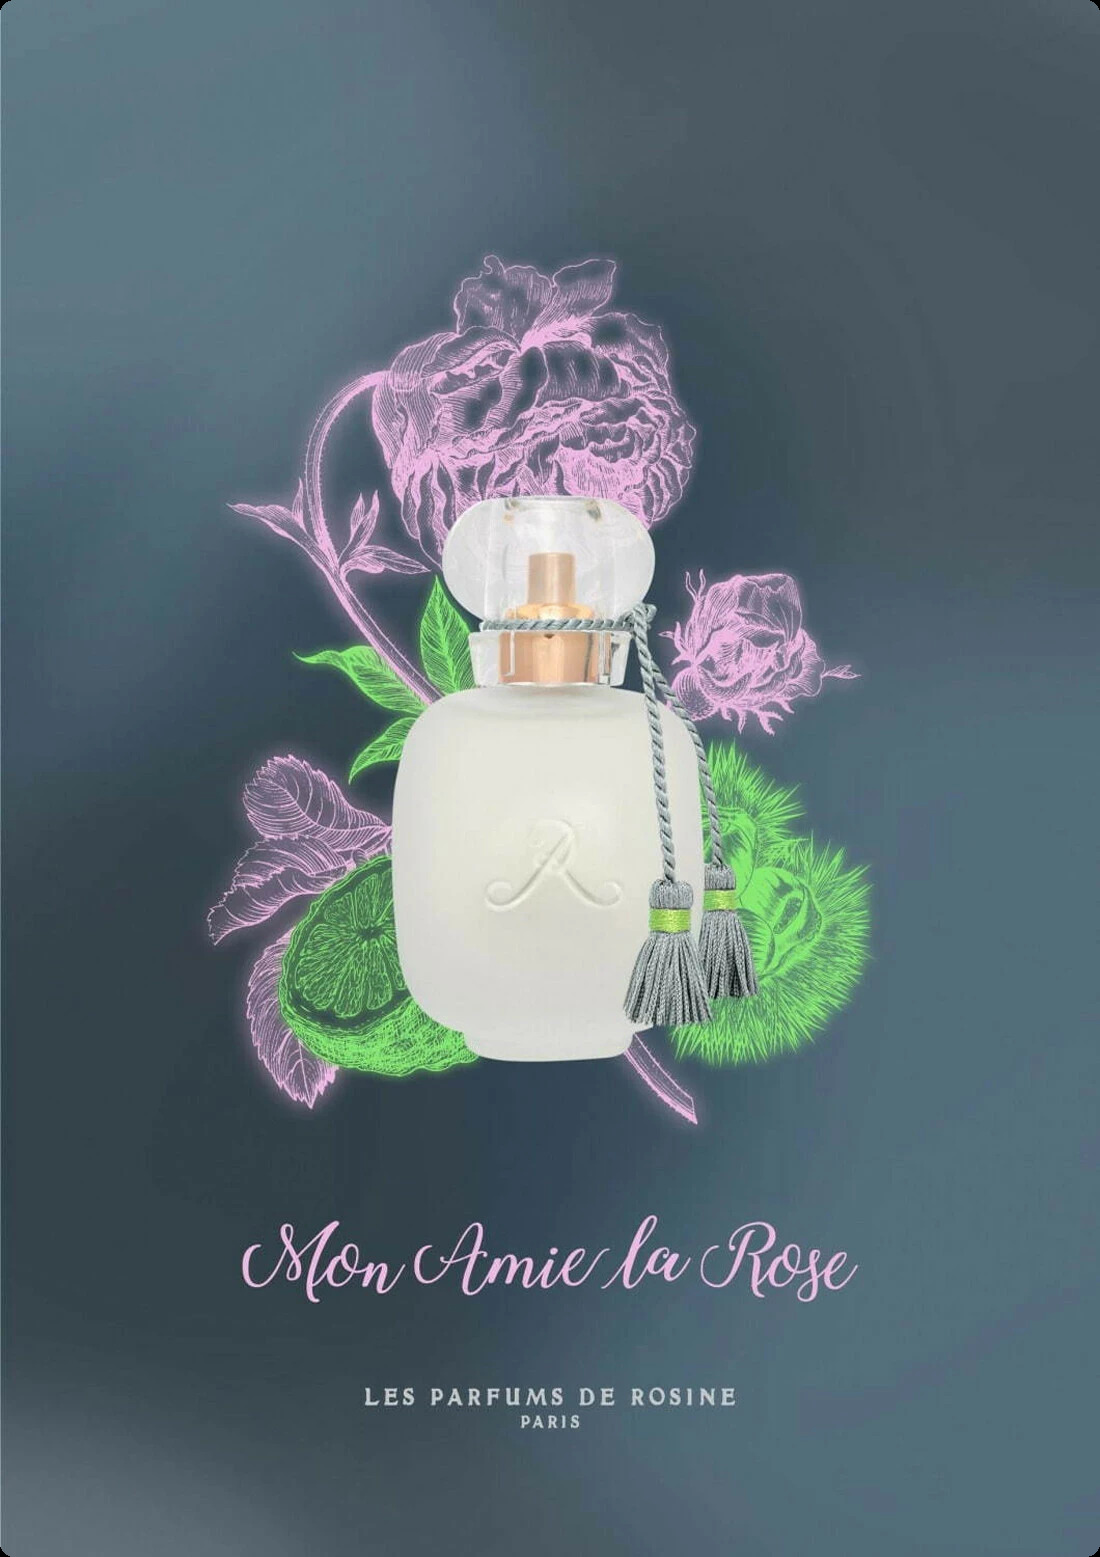 Лес парфюмс де розине Мон ами ла роуз для женщин - фото 1